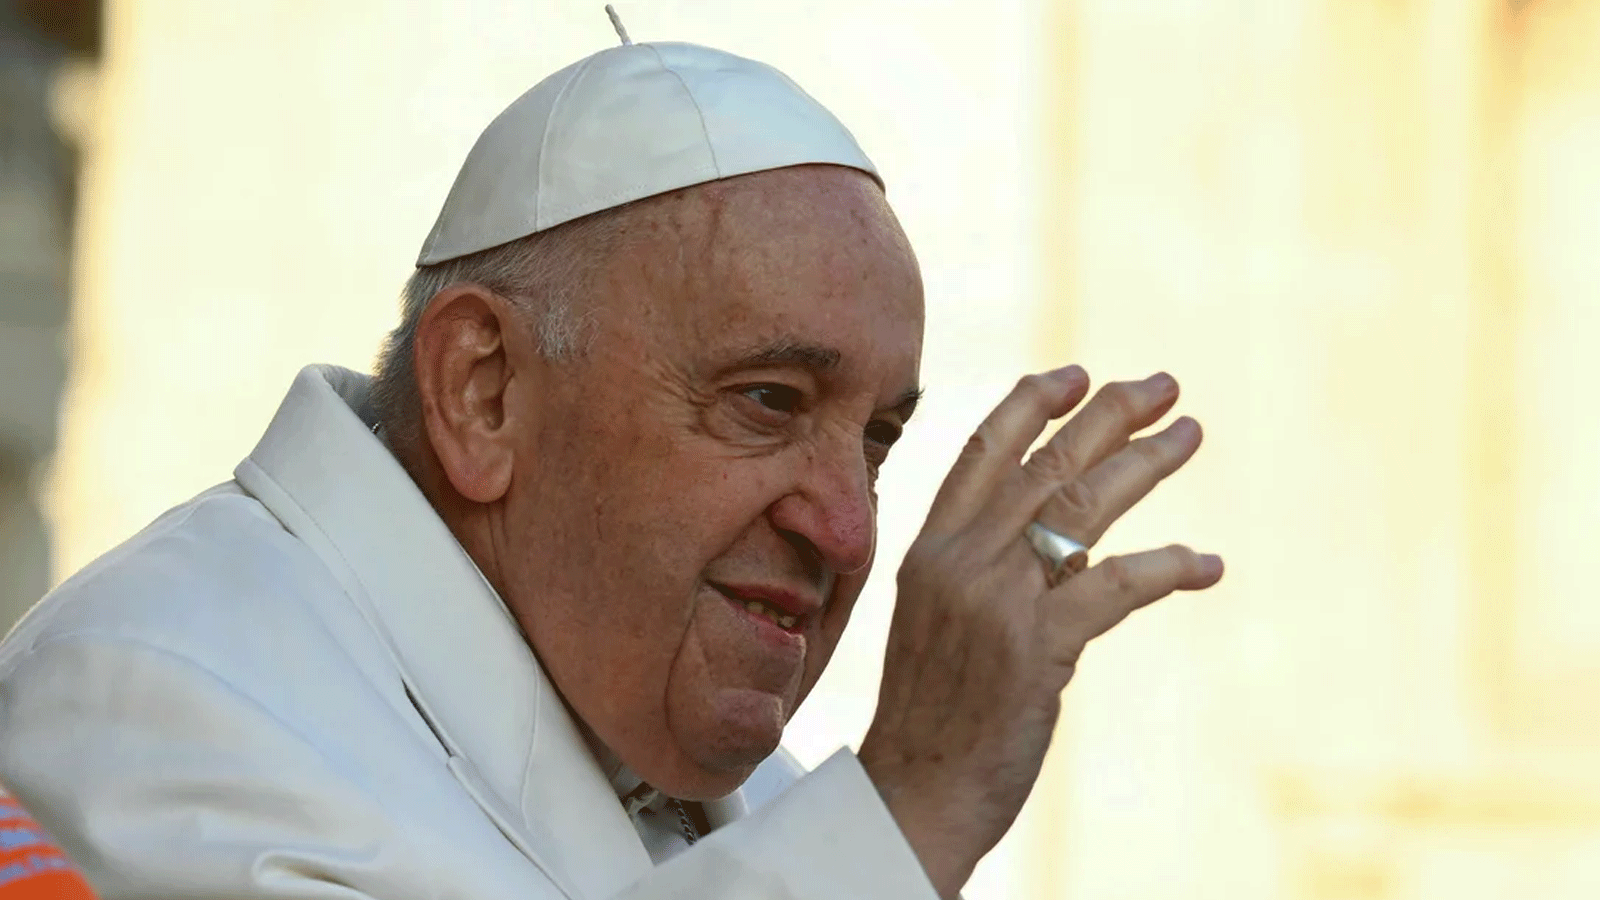 البابا فرنسيس يبدأ فترة نقاهة بعد عملية جراحية في البطن